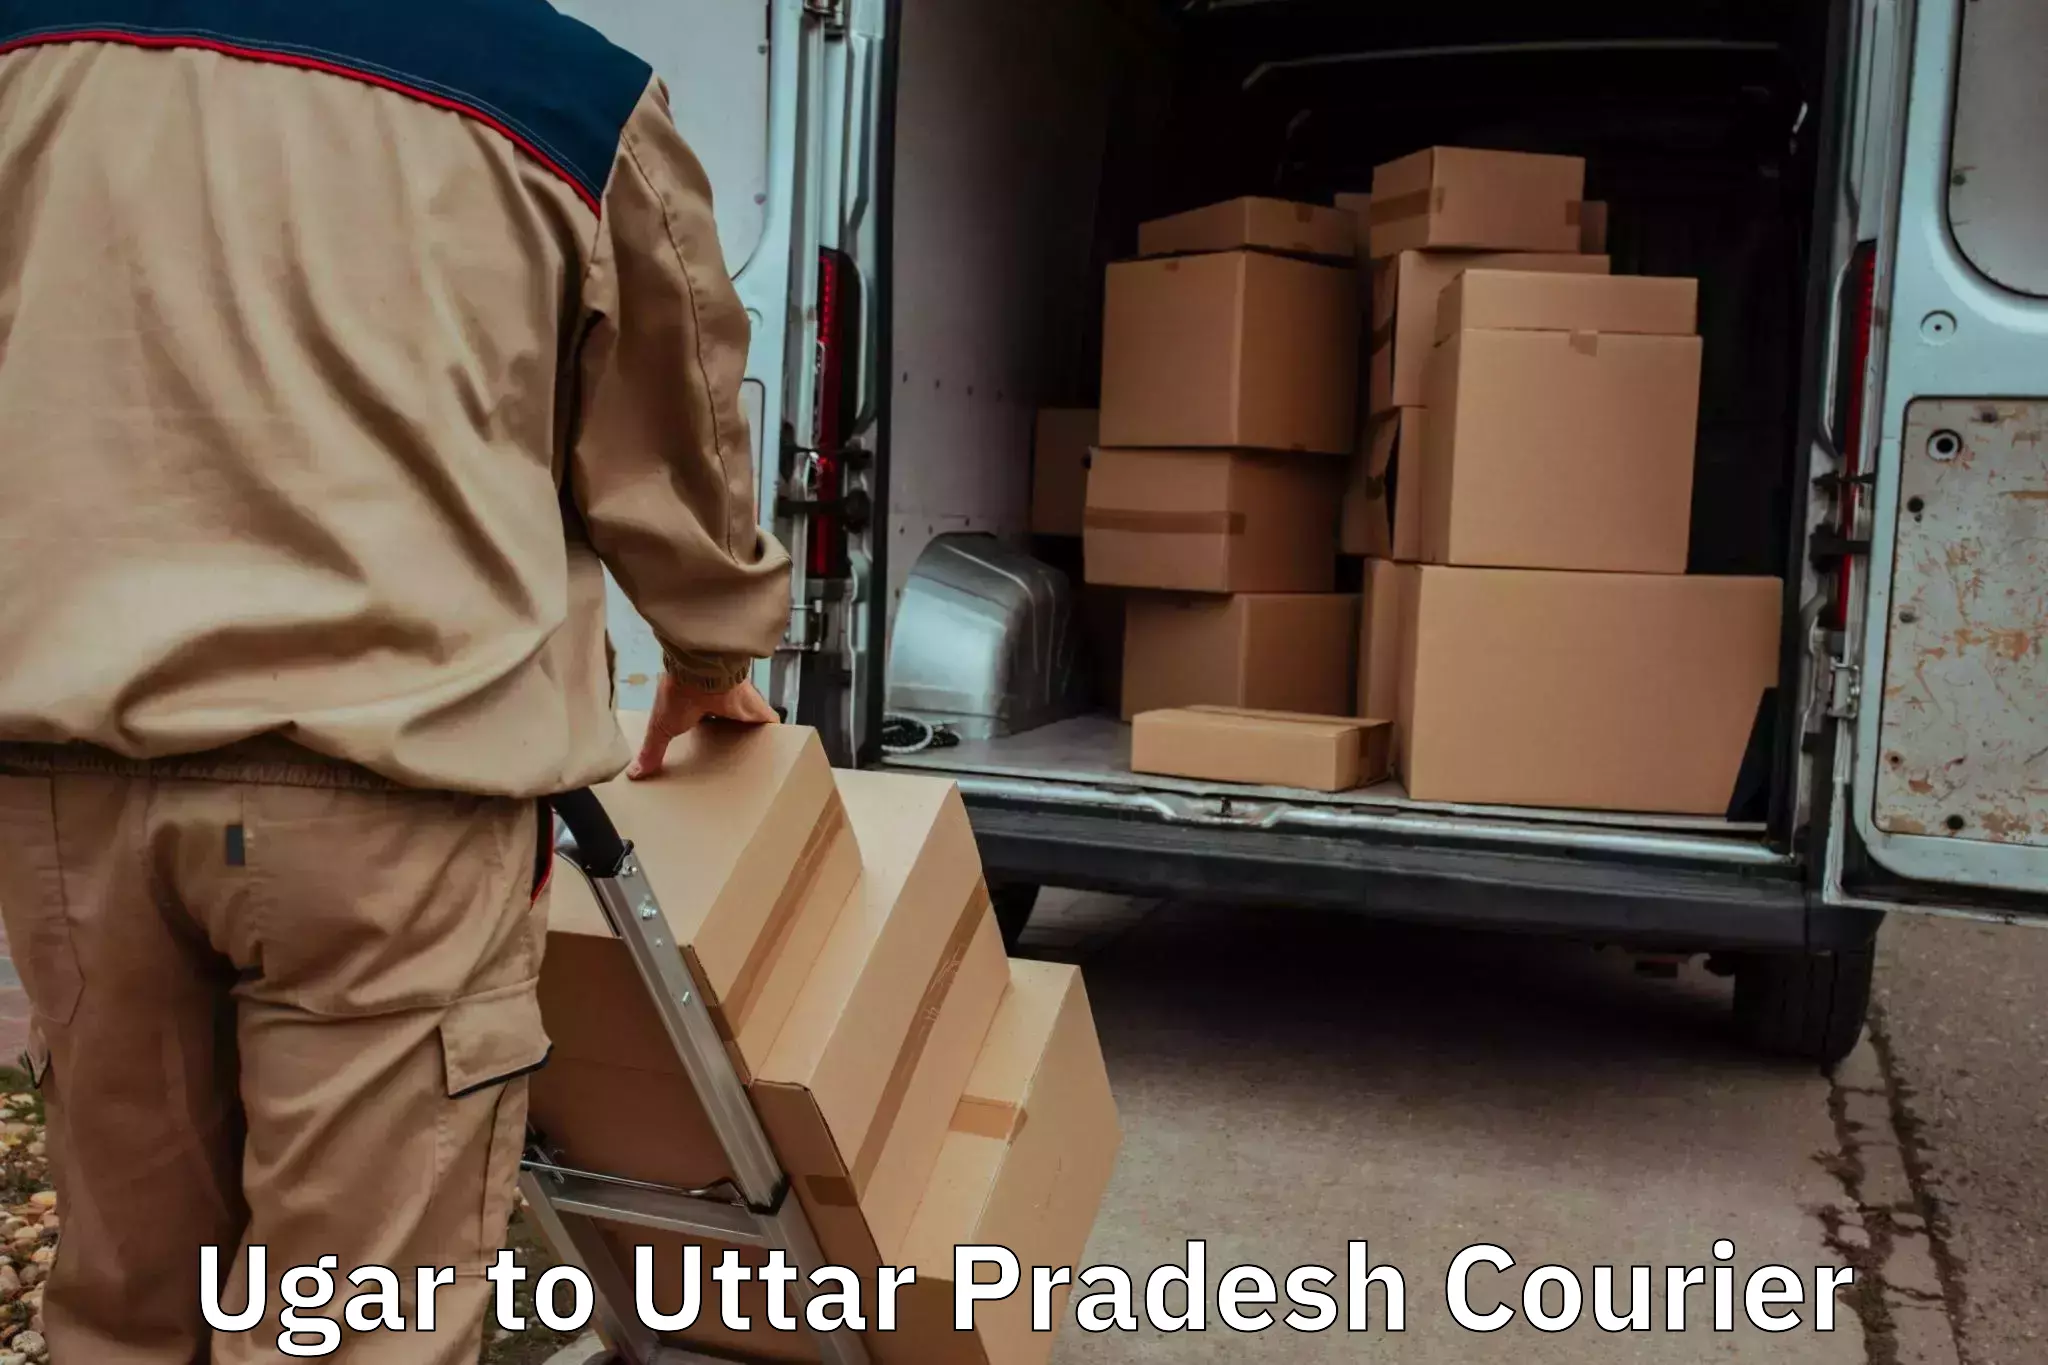 Household goods transporters Ugar to Uttar Pradesh